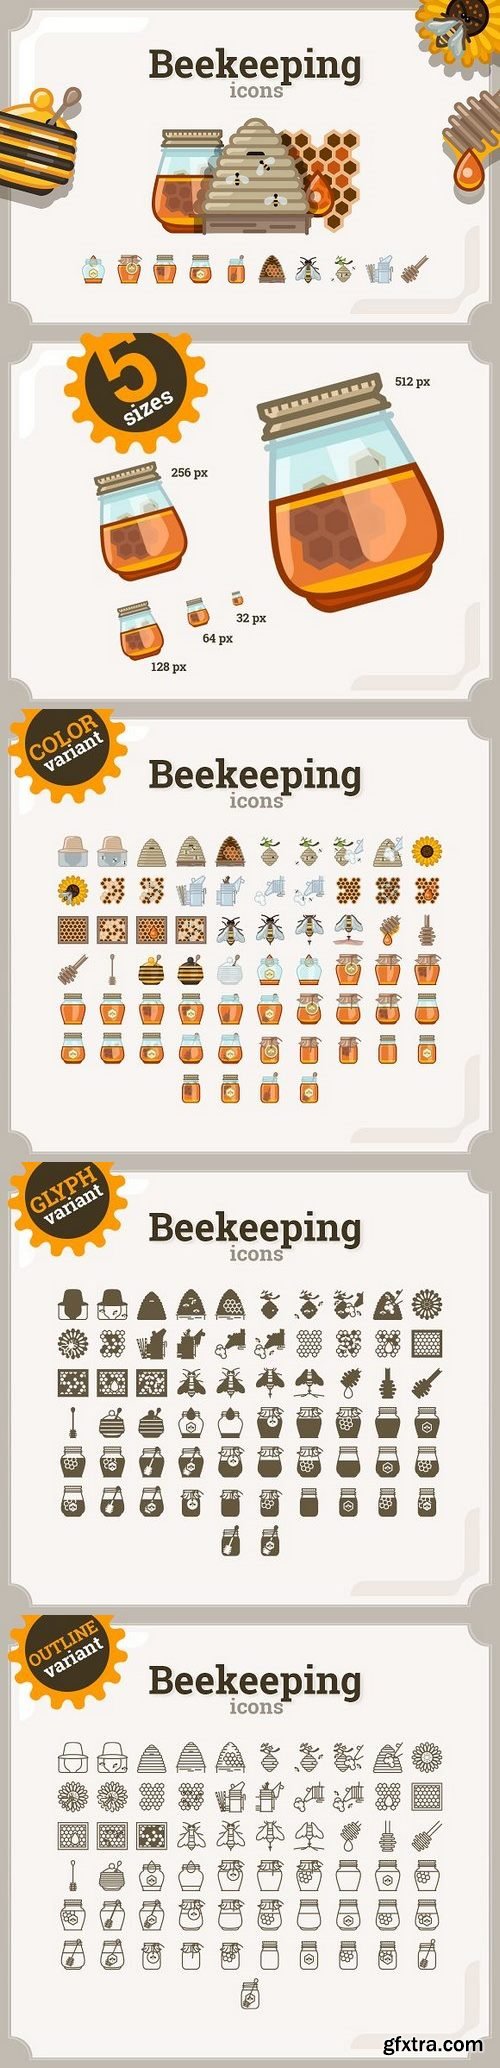 CM - Beekeeping icons set (3 variants) 1326278